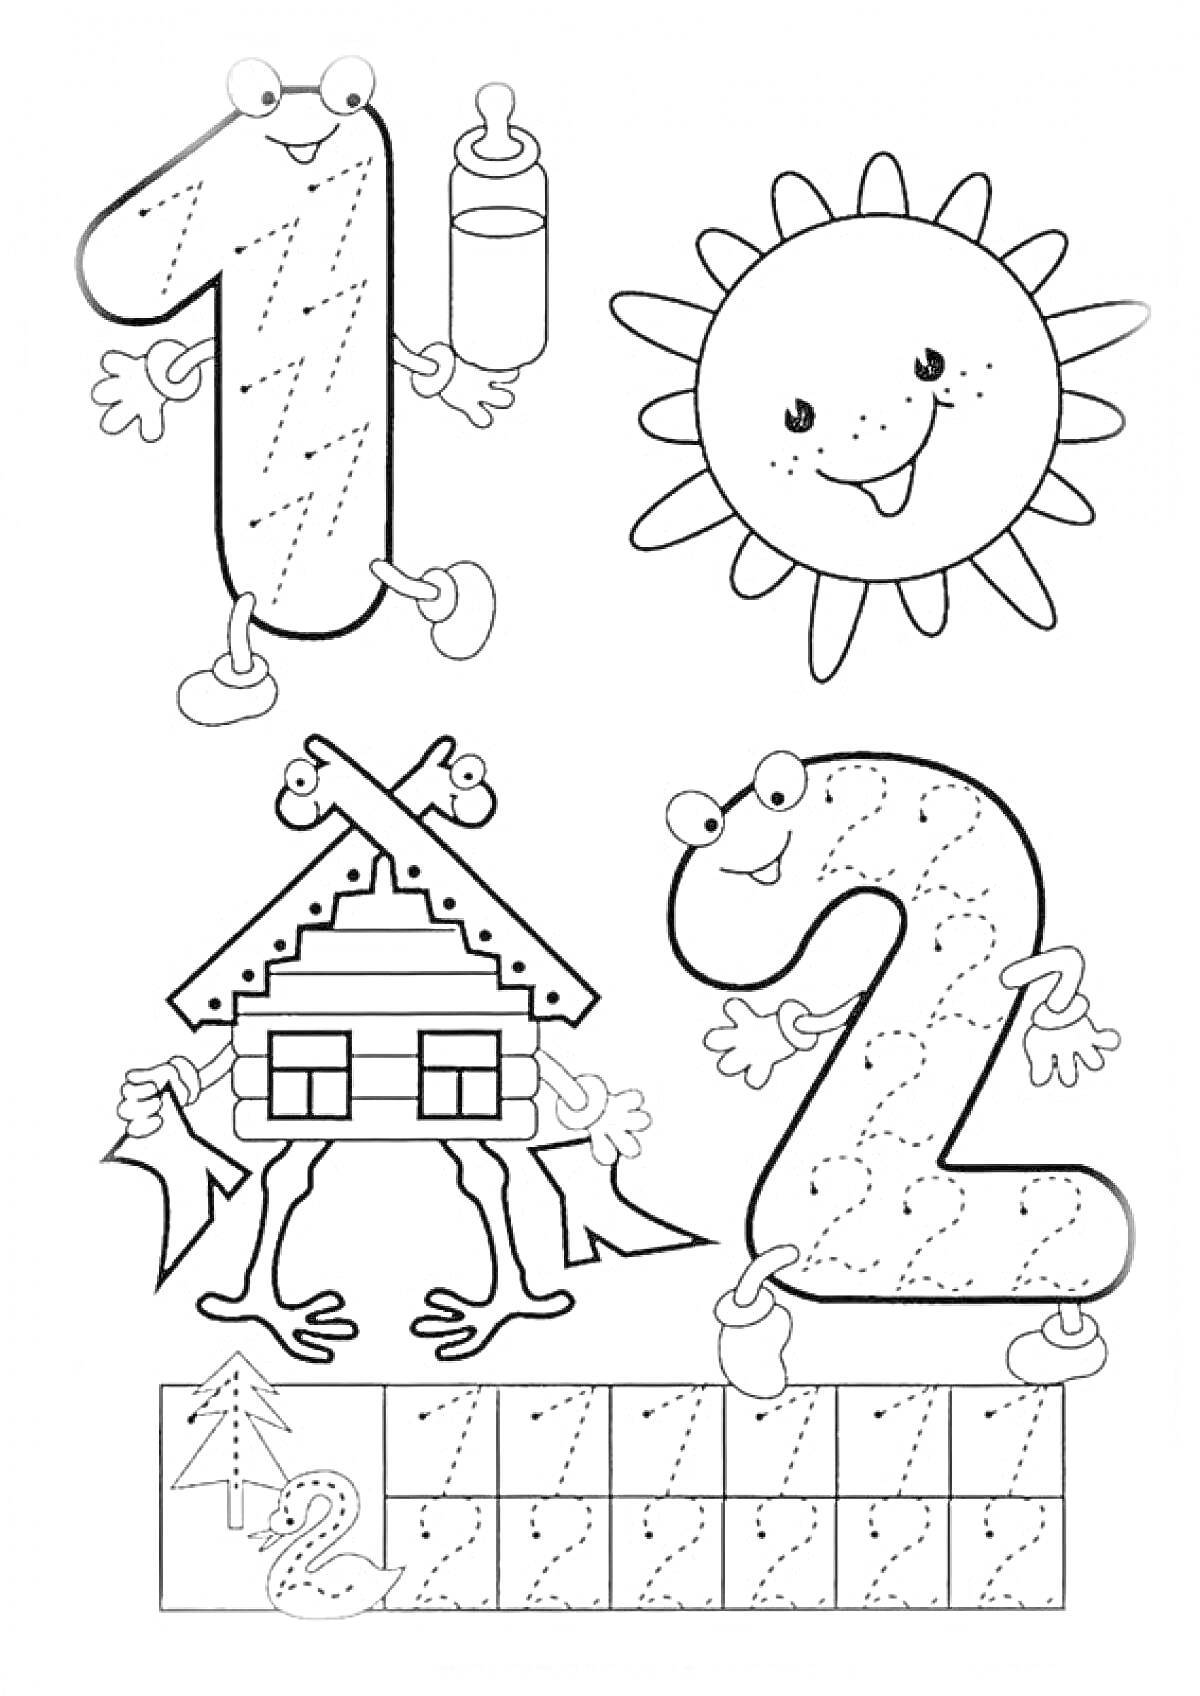 Раскраска цифры 1 и 2, солнце, домик на ножках, квадраты для рисования, уточка, дерево